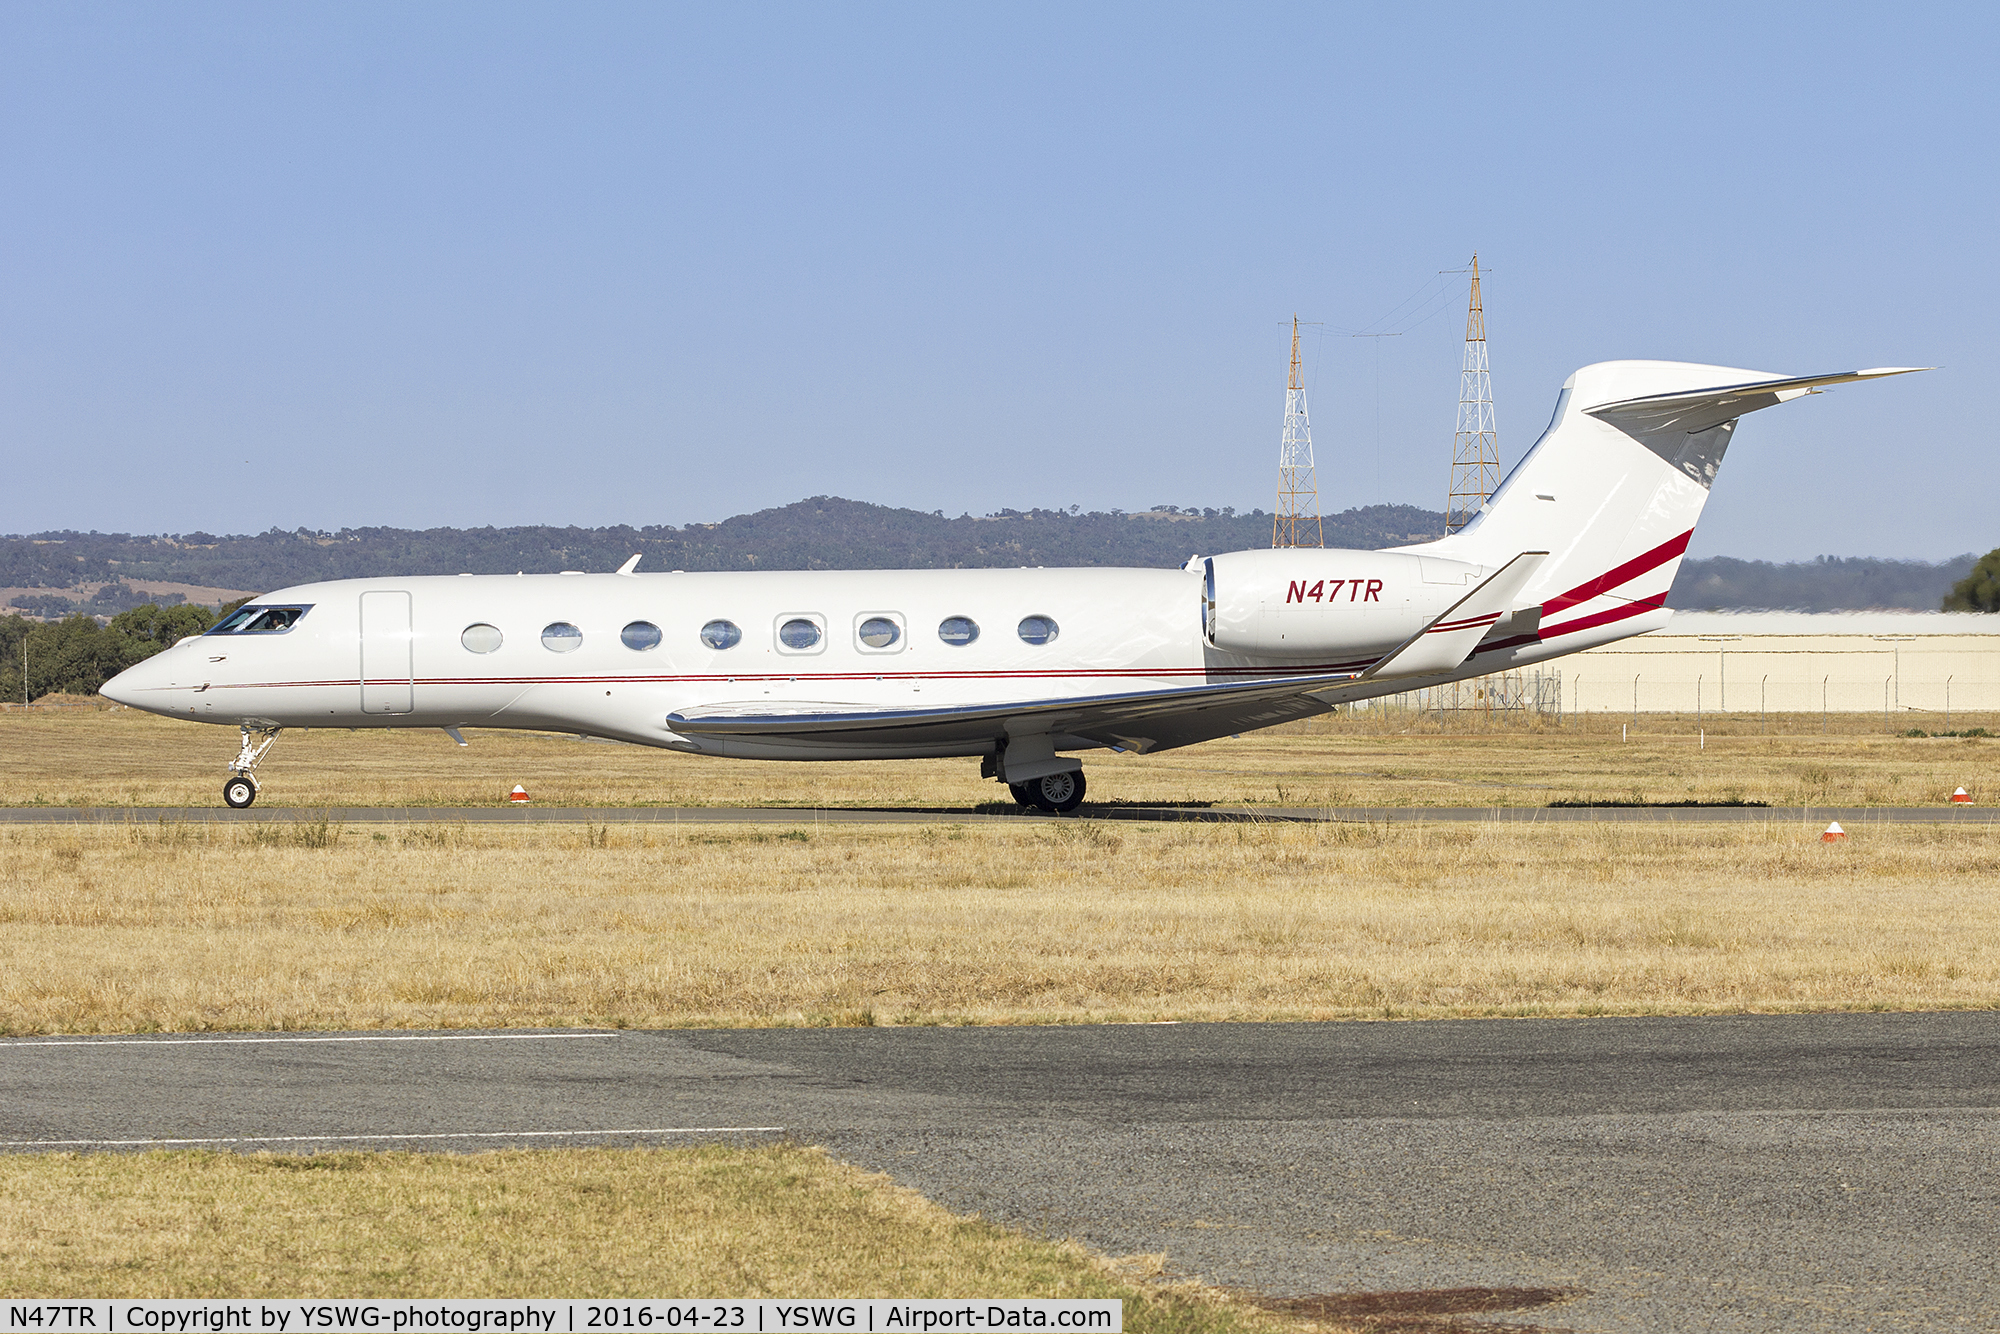 N47TR, 2014 Gulfstream Aerospace G650 (G-VI) C/N 6101, AvWest (N47TR) Gulfstream Aerospace G-VI (G650) taxiing at Wagga Wagga Airport.